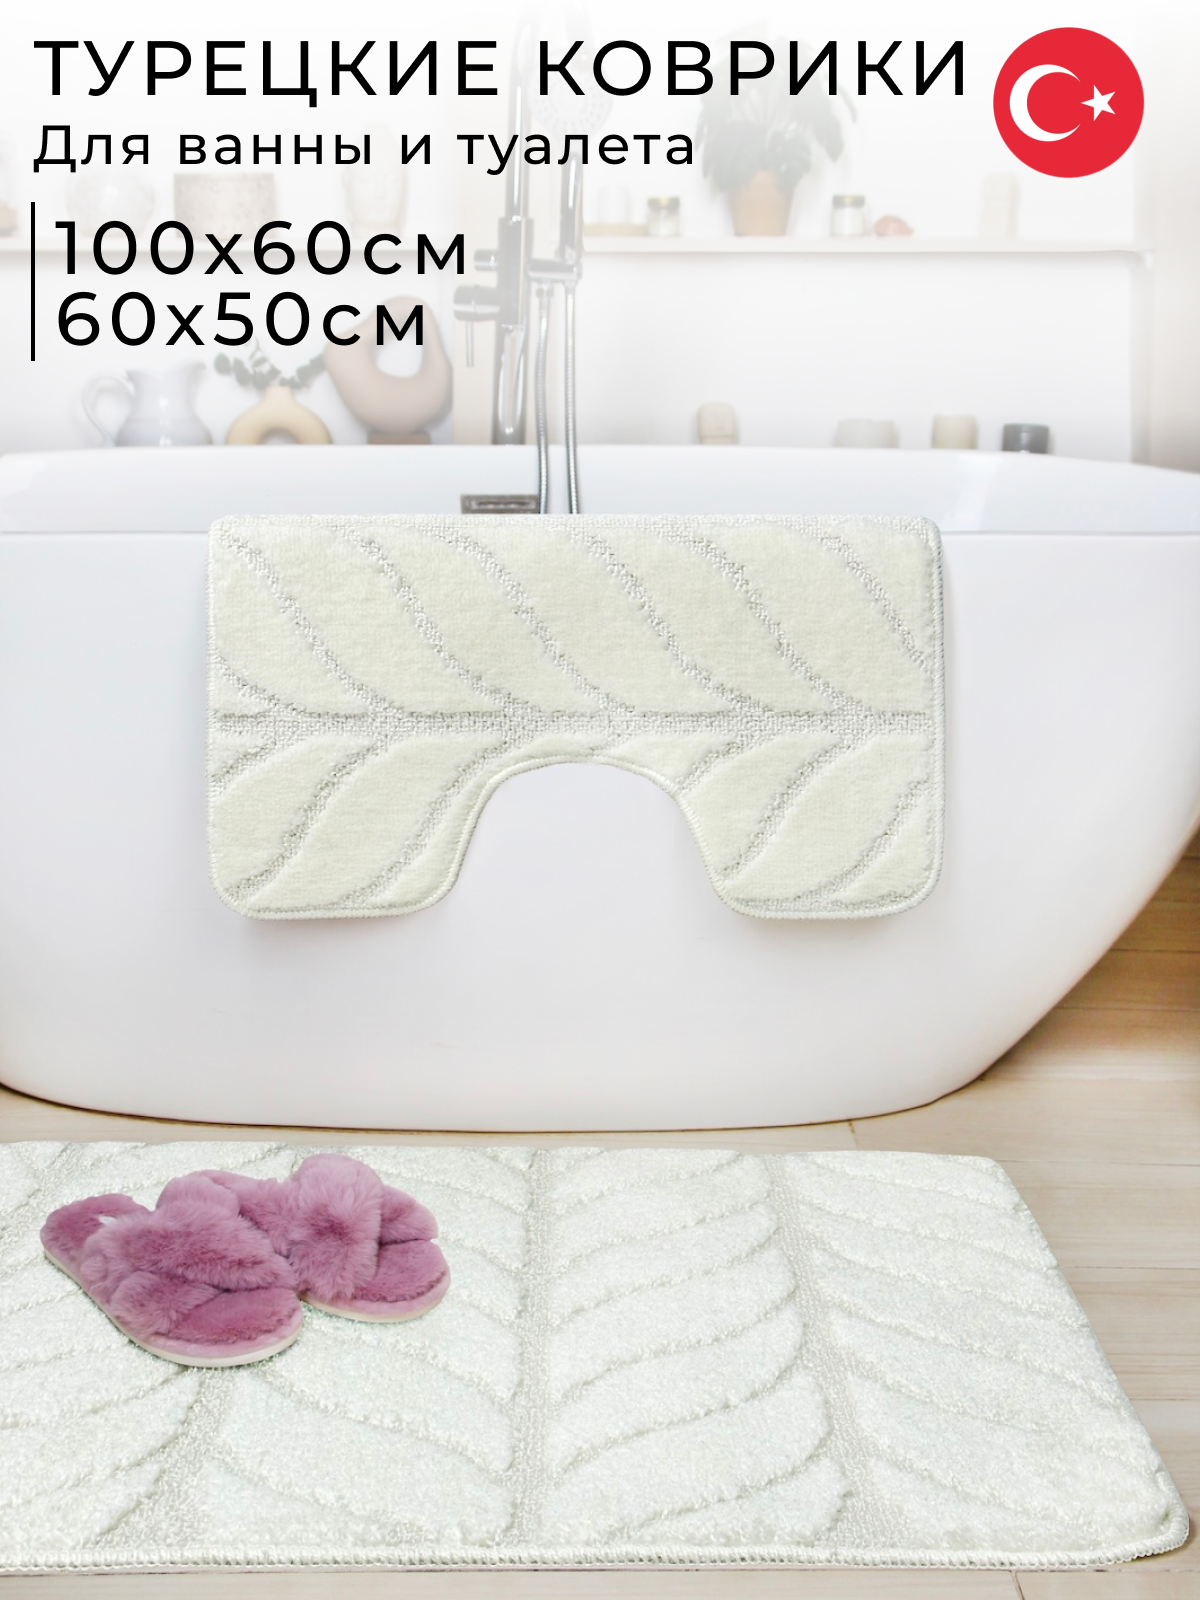 Коврики для ванной и туалета Fantastik 100х60 см и 60х50 см, кремовый